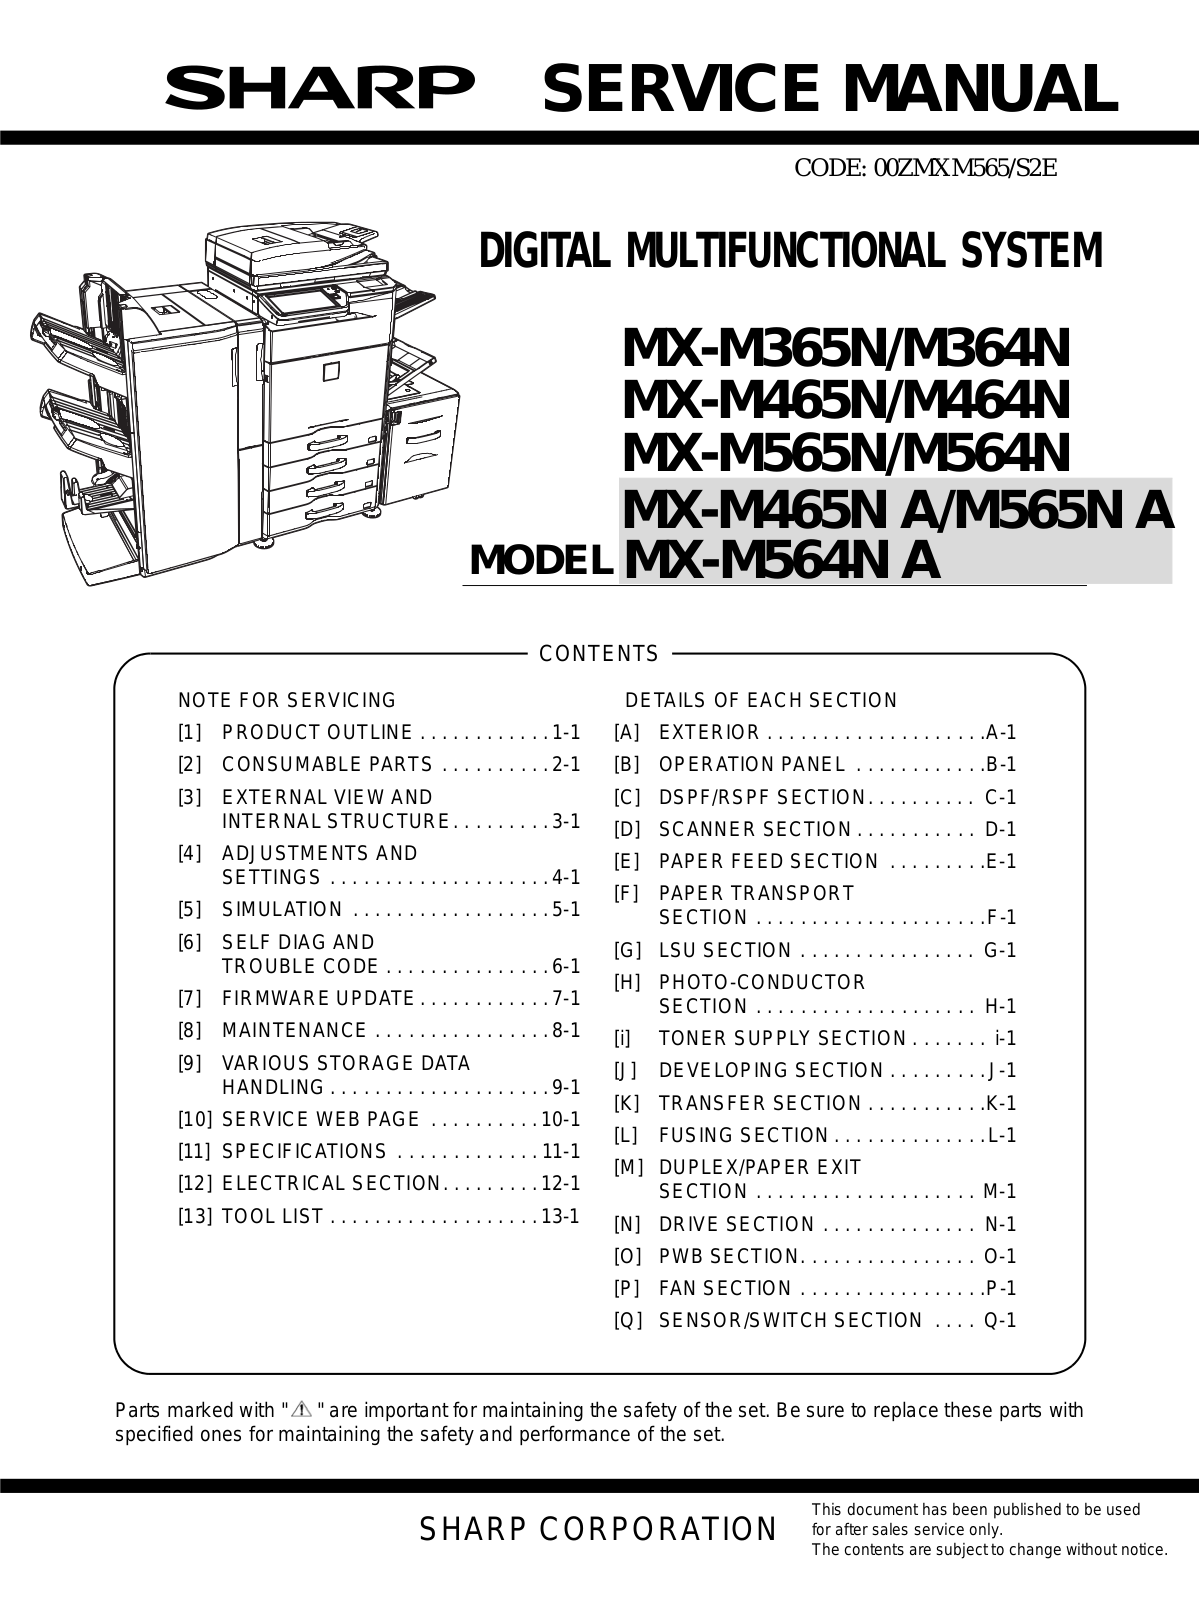 Sharp MX-M365N, M465N, M565N, M364N, M464N Service Manual